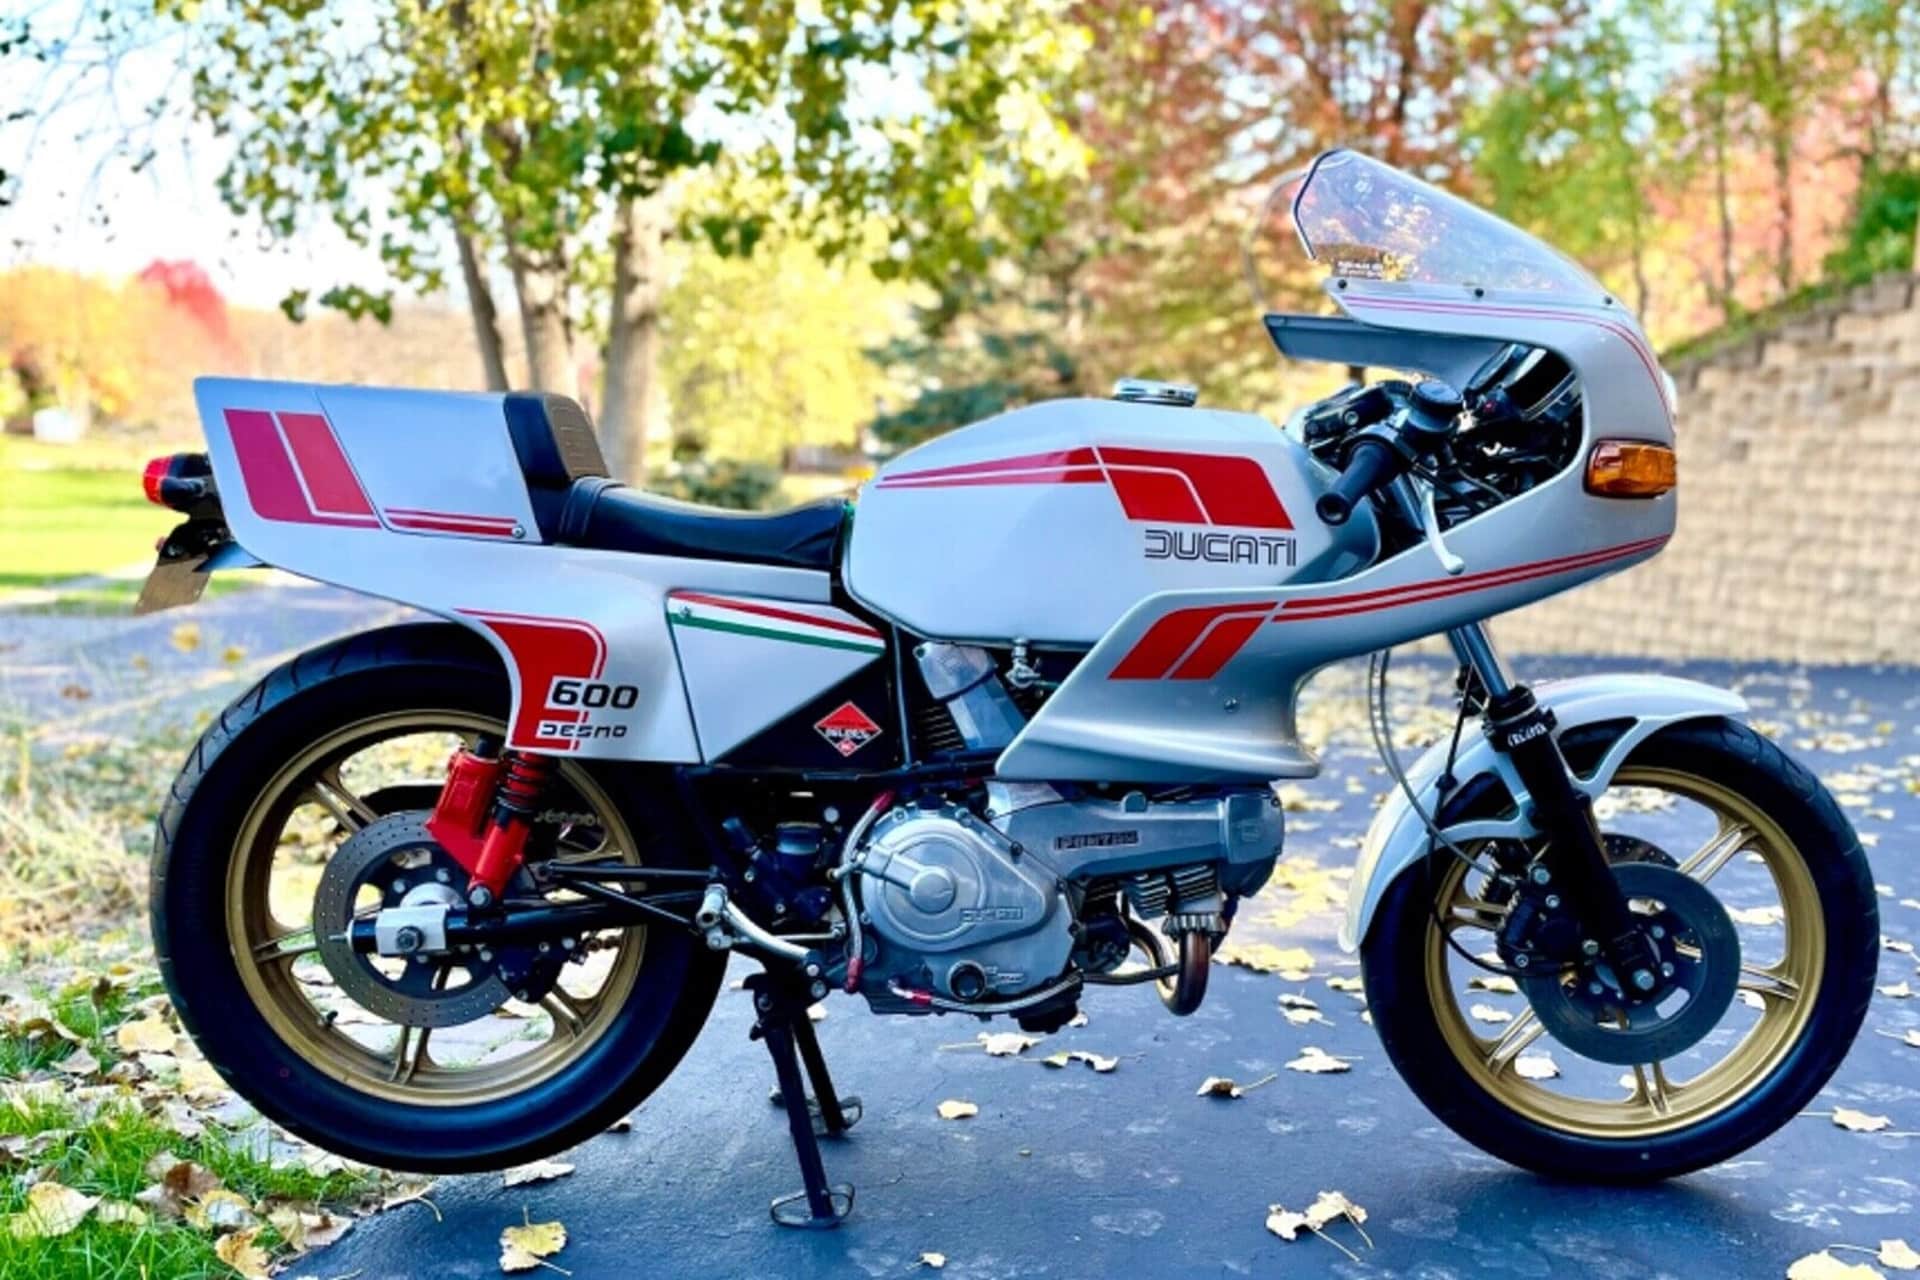 Motos de ensueño a la venta: Ducati Pantah 600SL de 1981